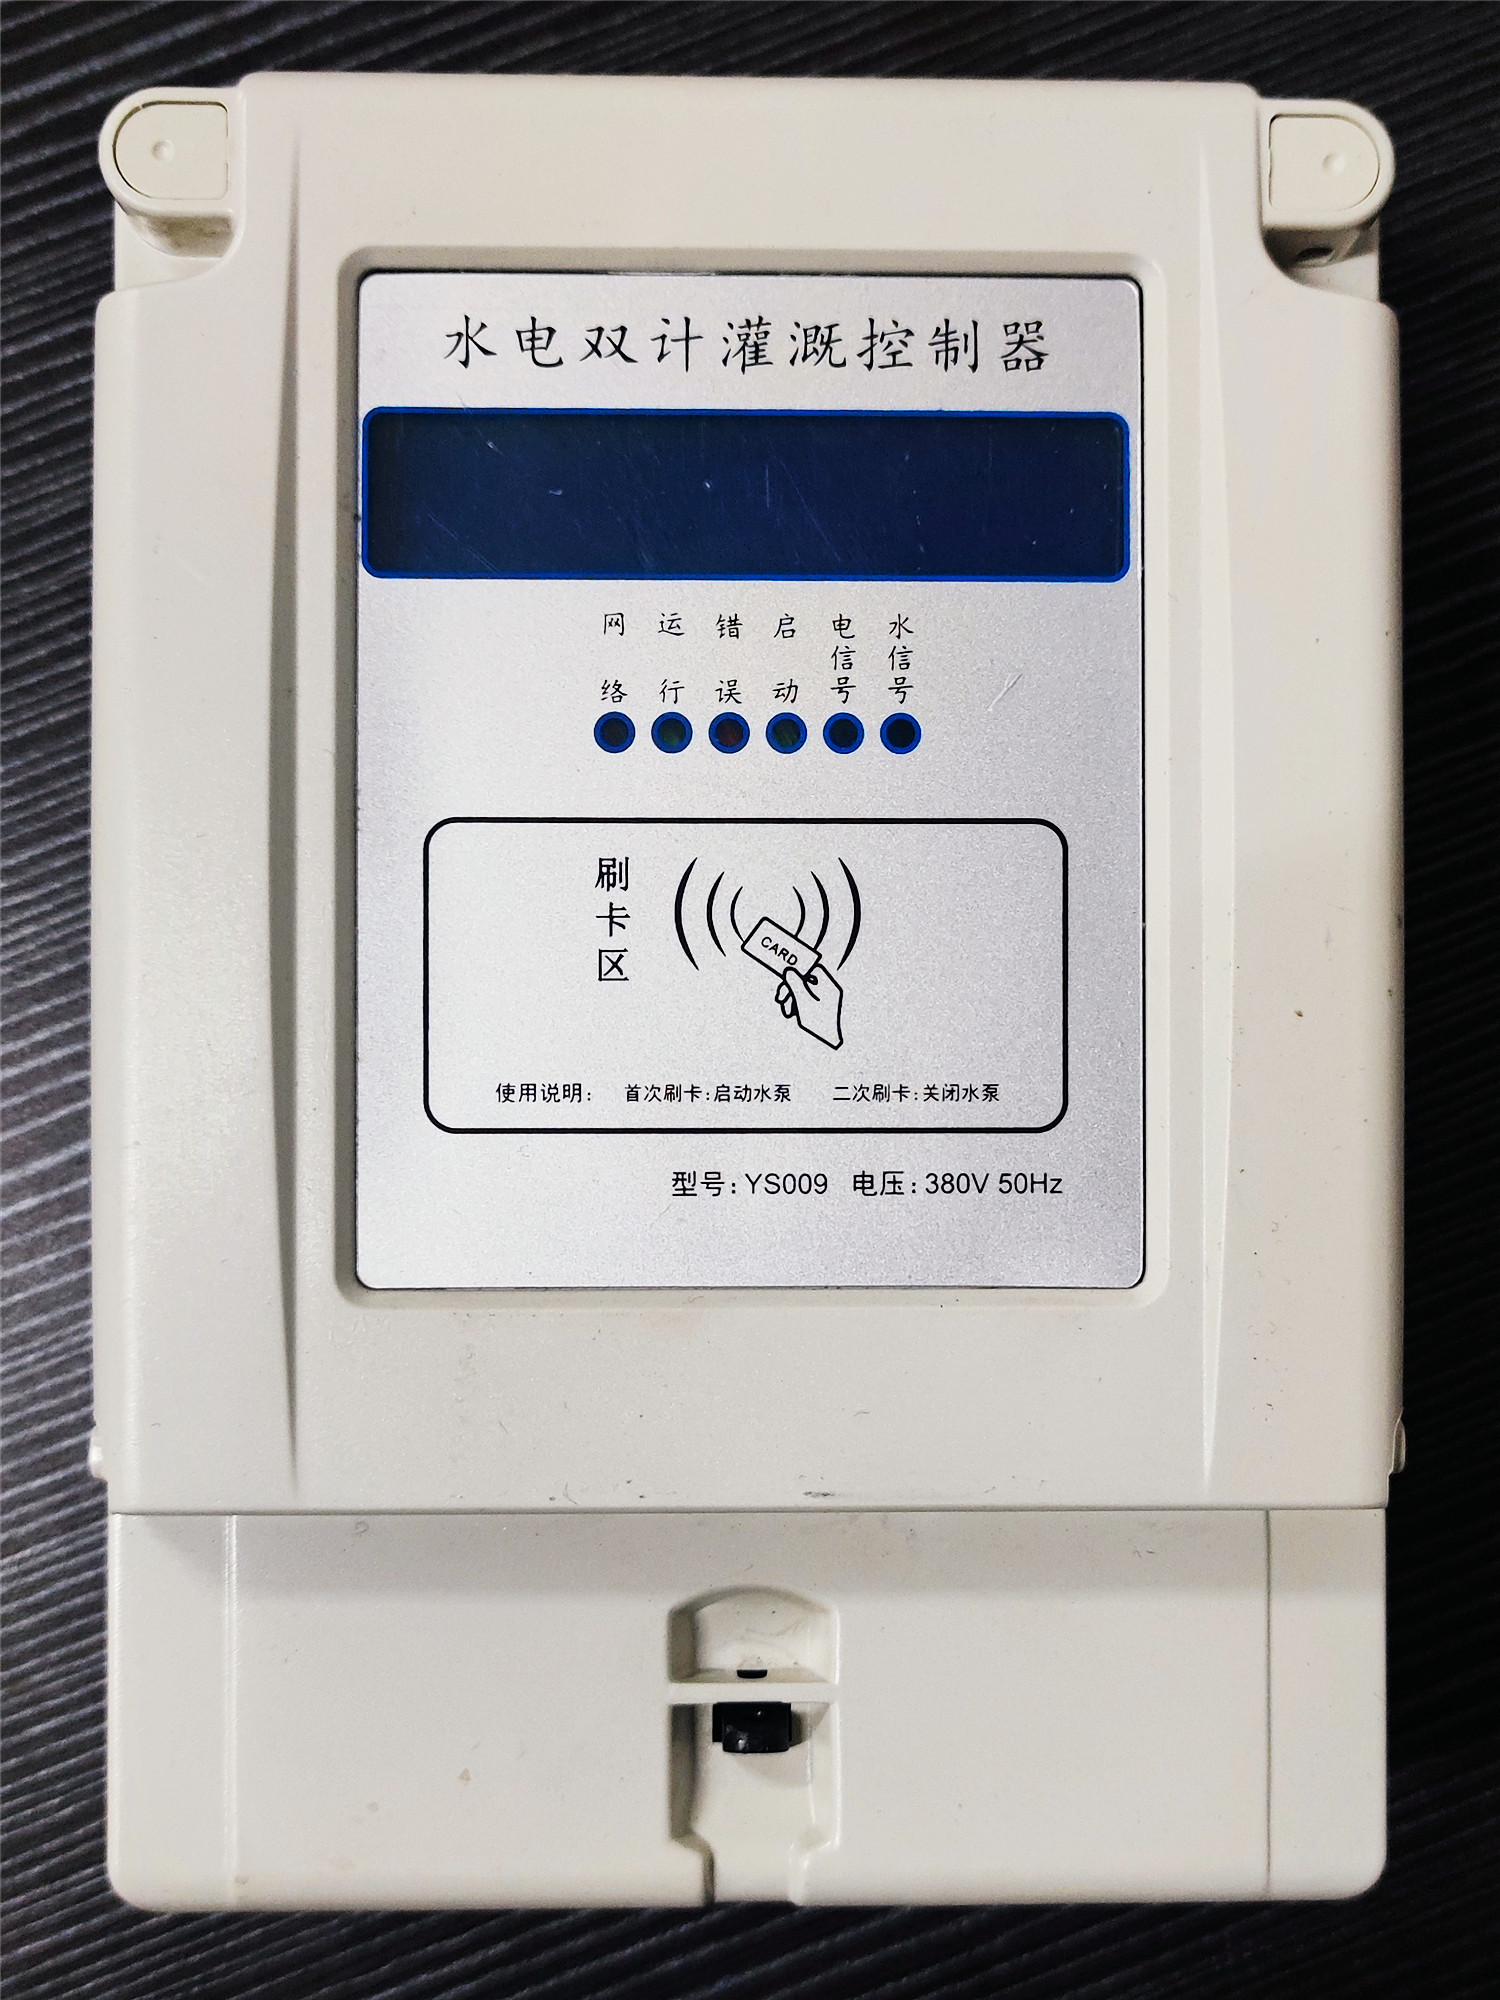 北京射频卡灌溉控制器出售_射频卡灌溉控制器多少钱_射频卡灌溉控制器供应商